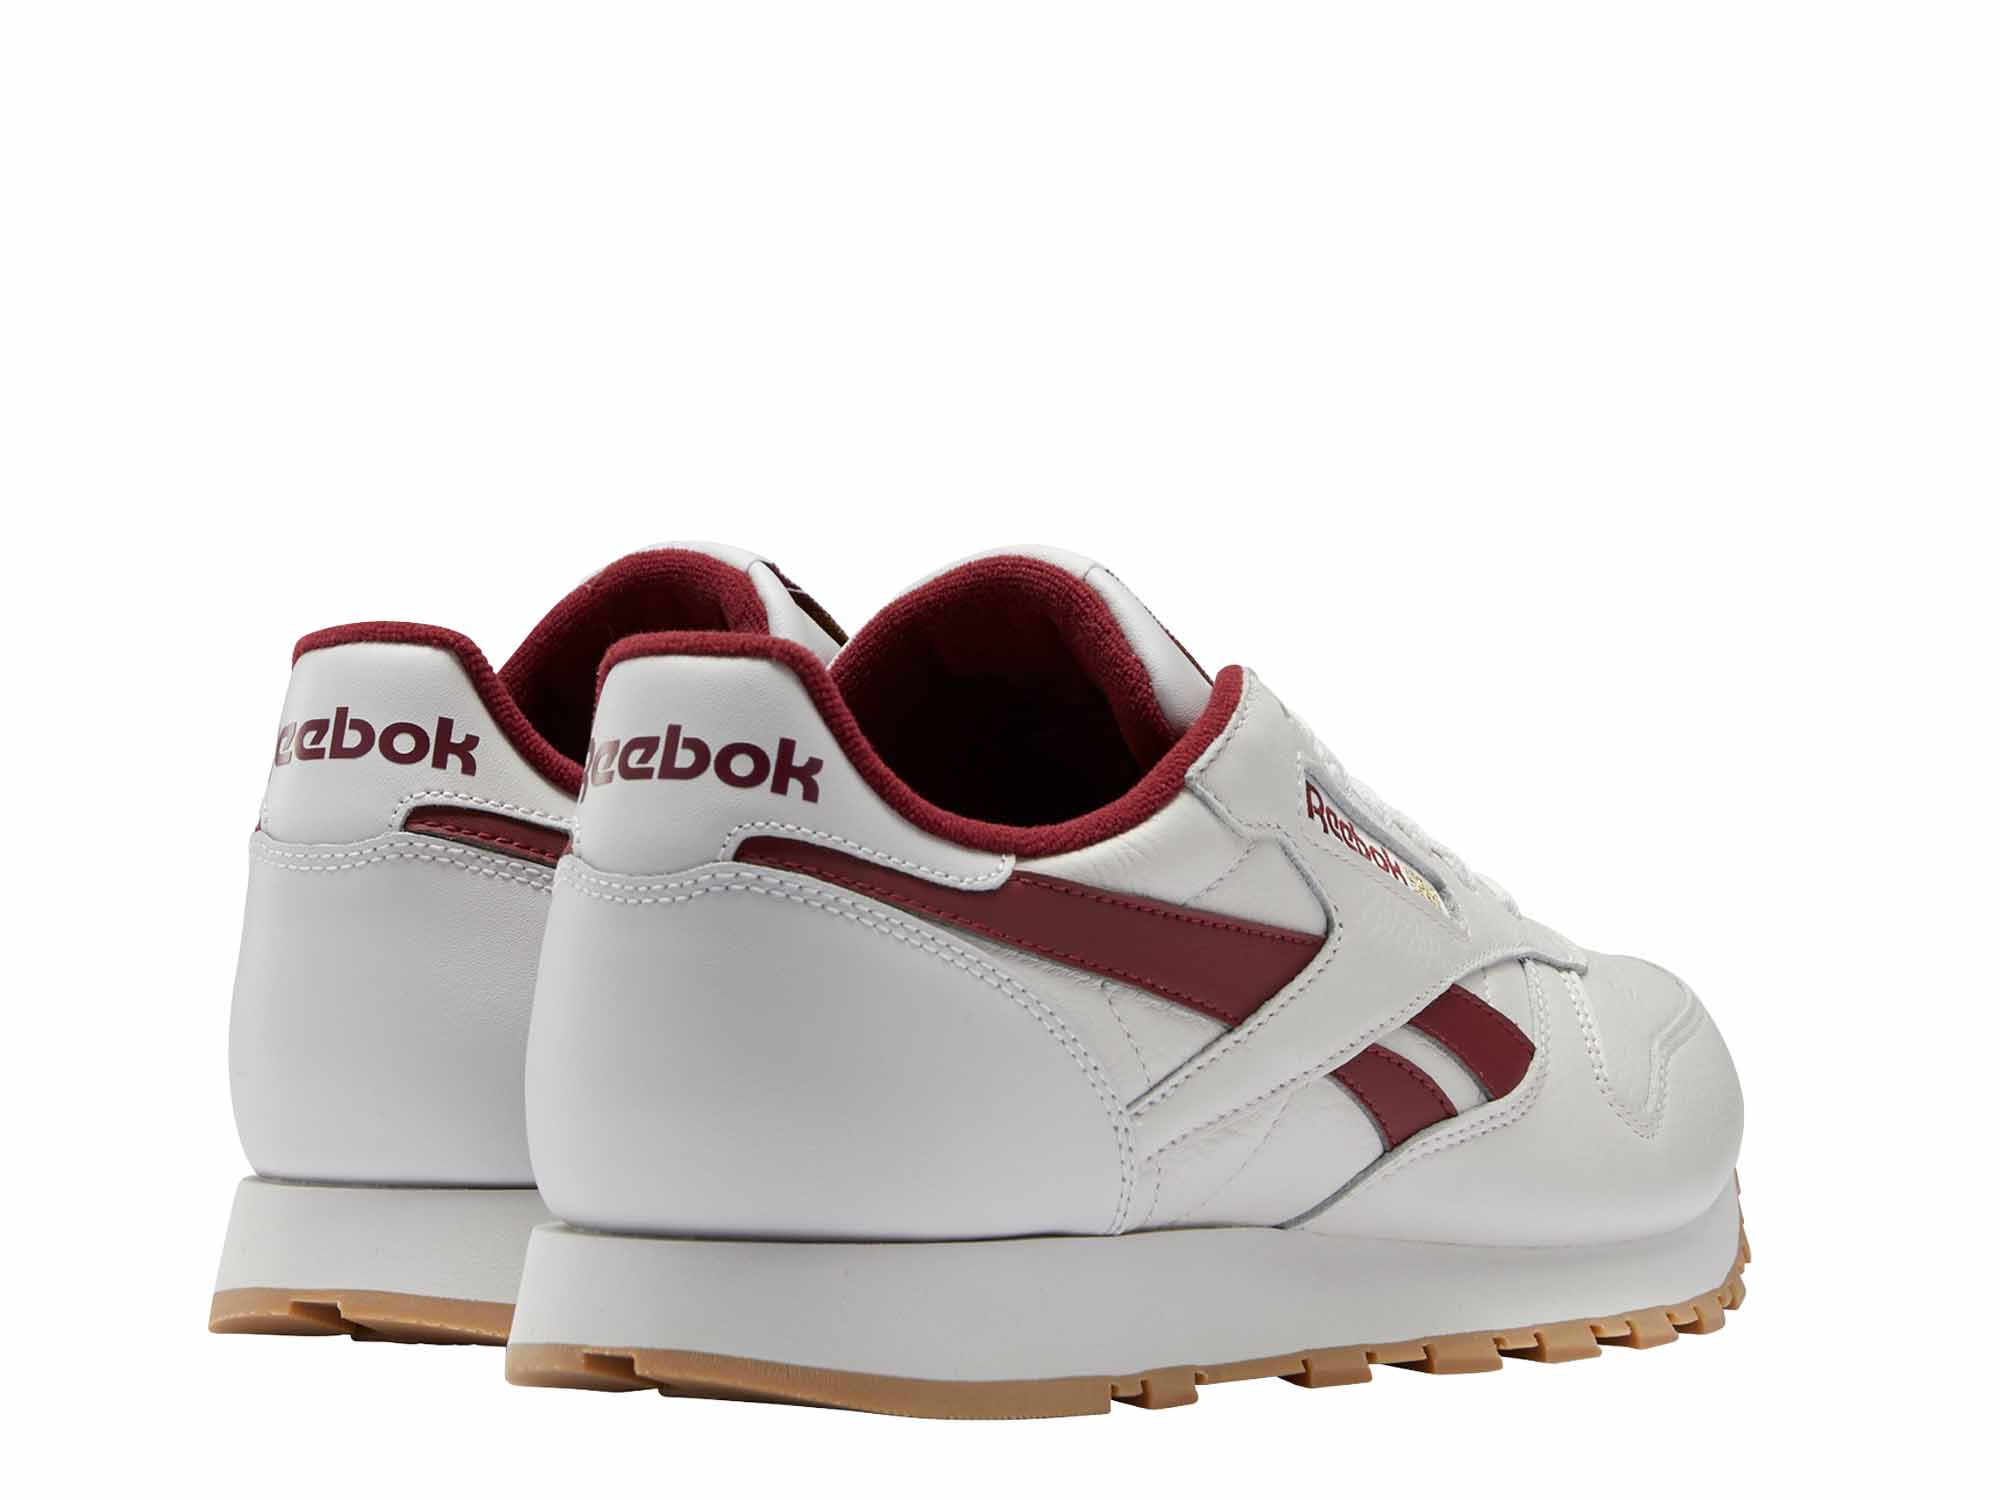 Reebok Classic Leather Herren Sneaker